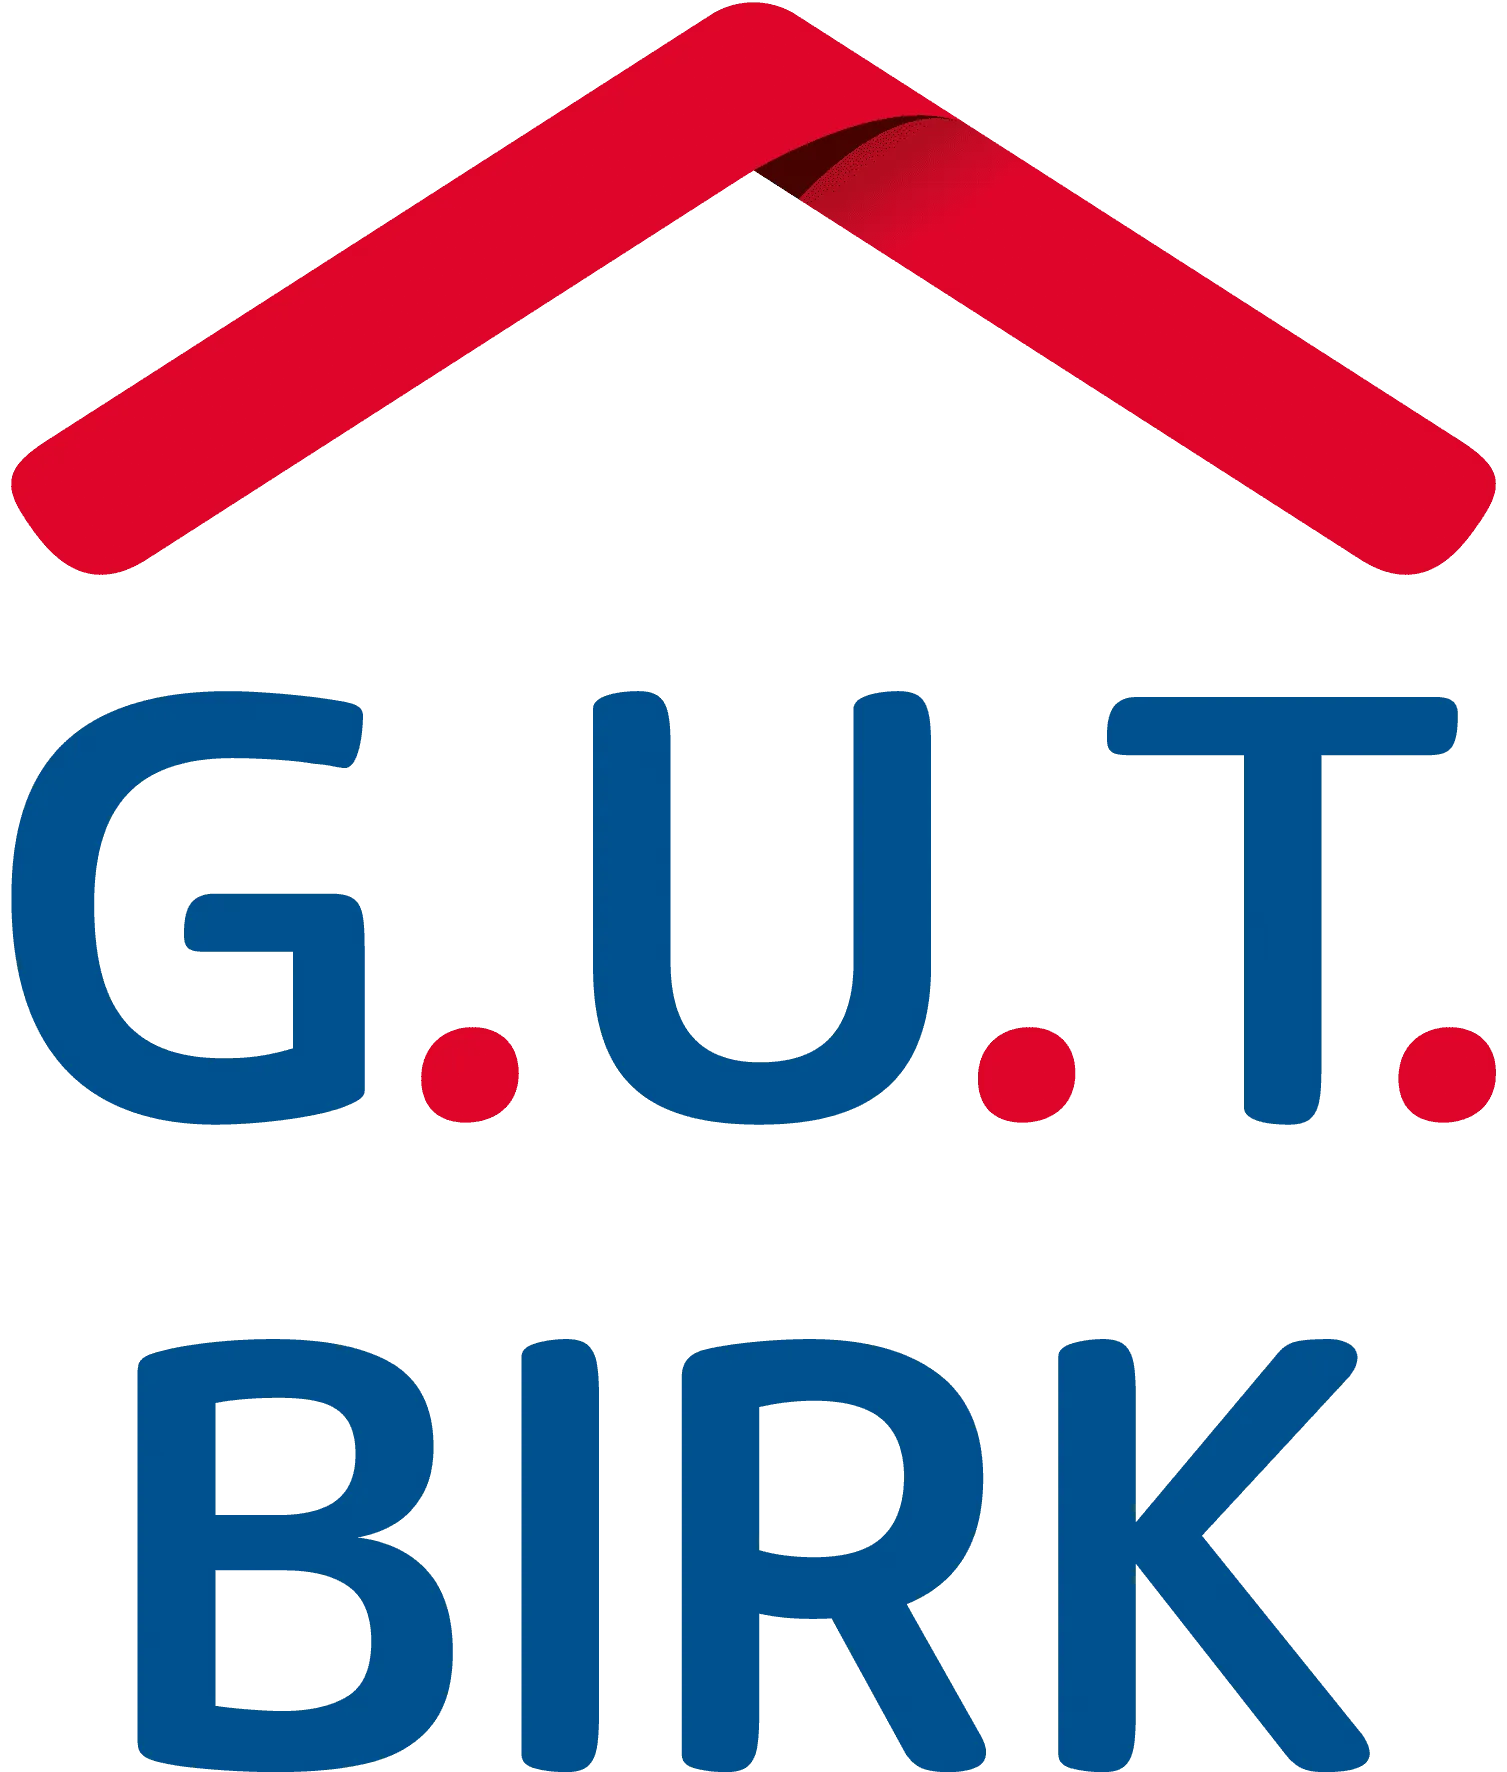 621_gut_birk_logo_4c_2021.png